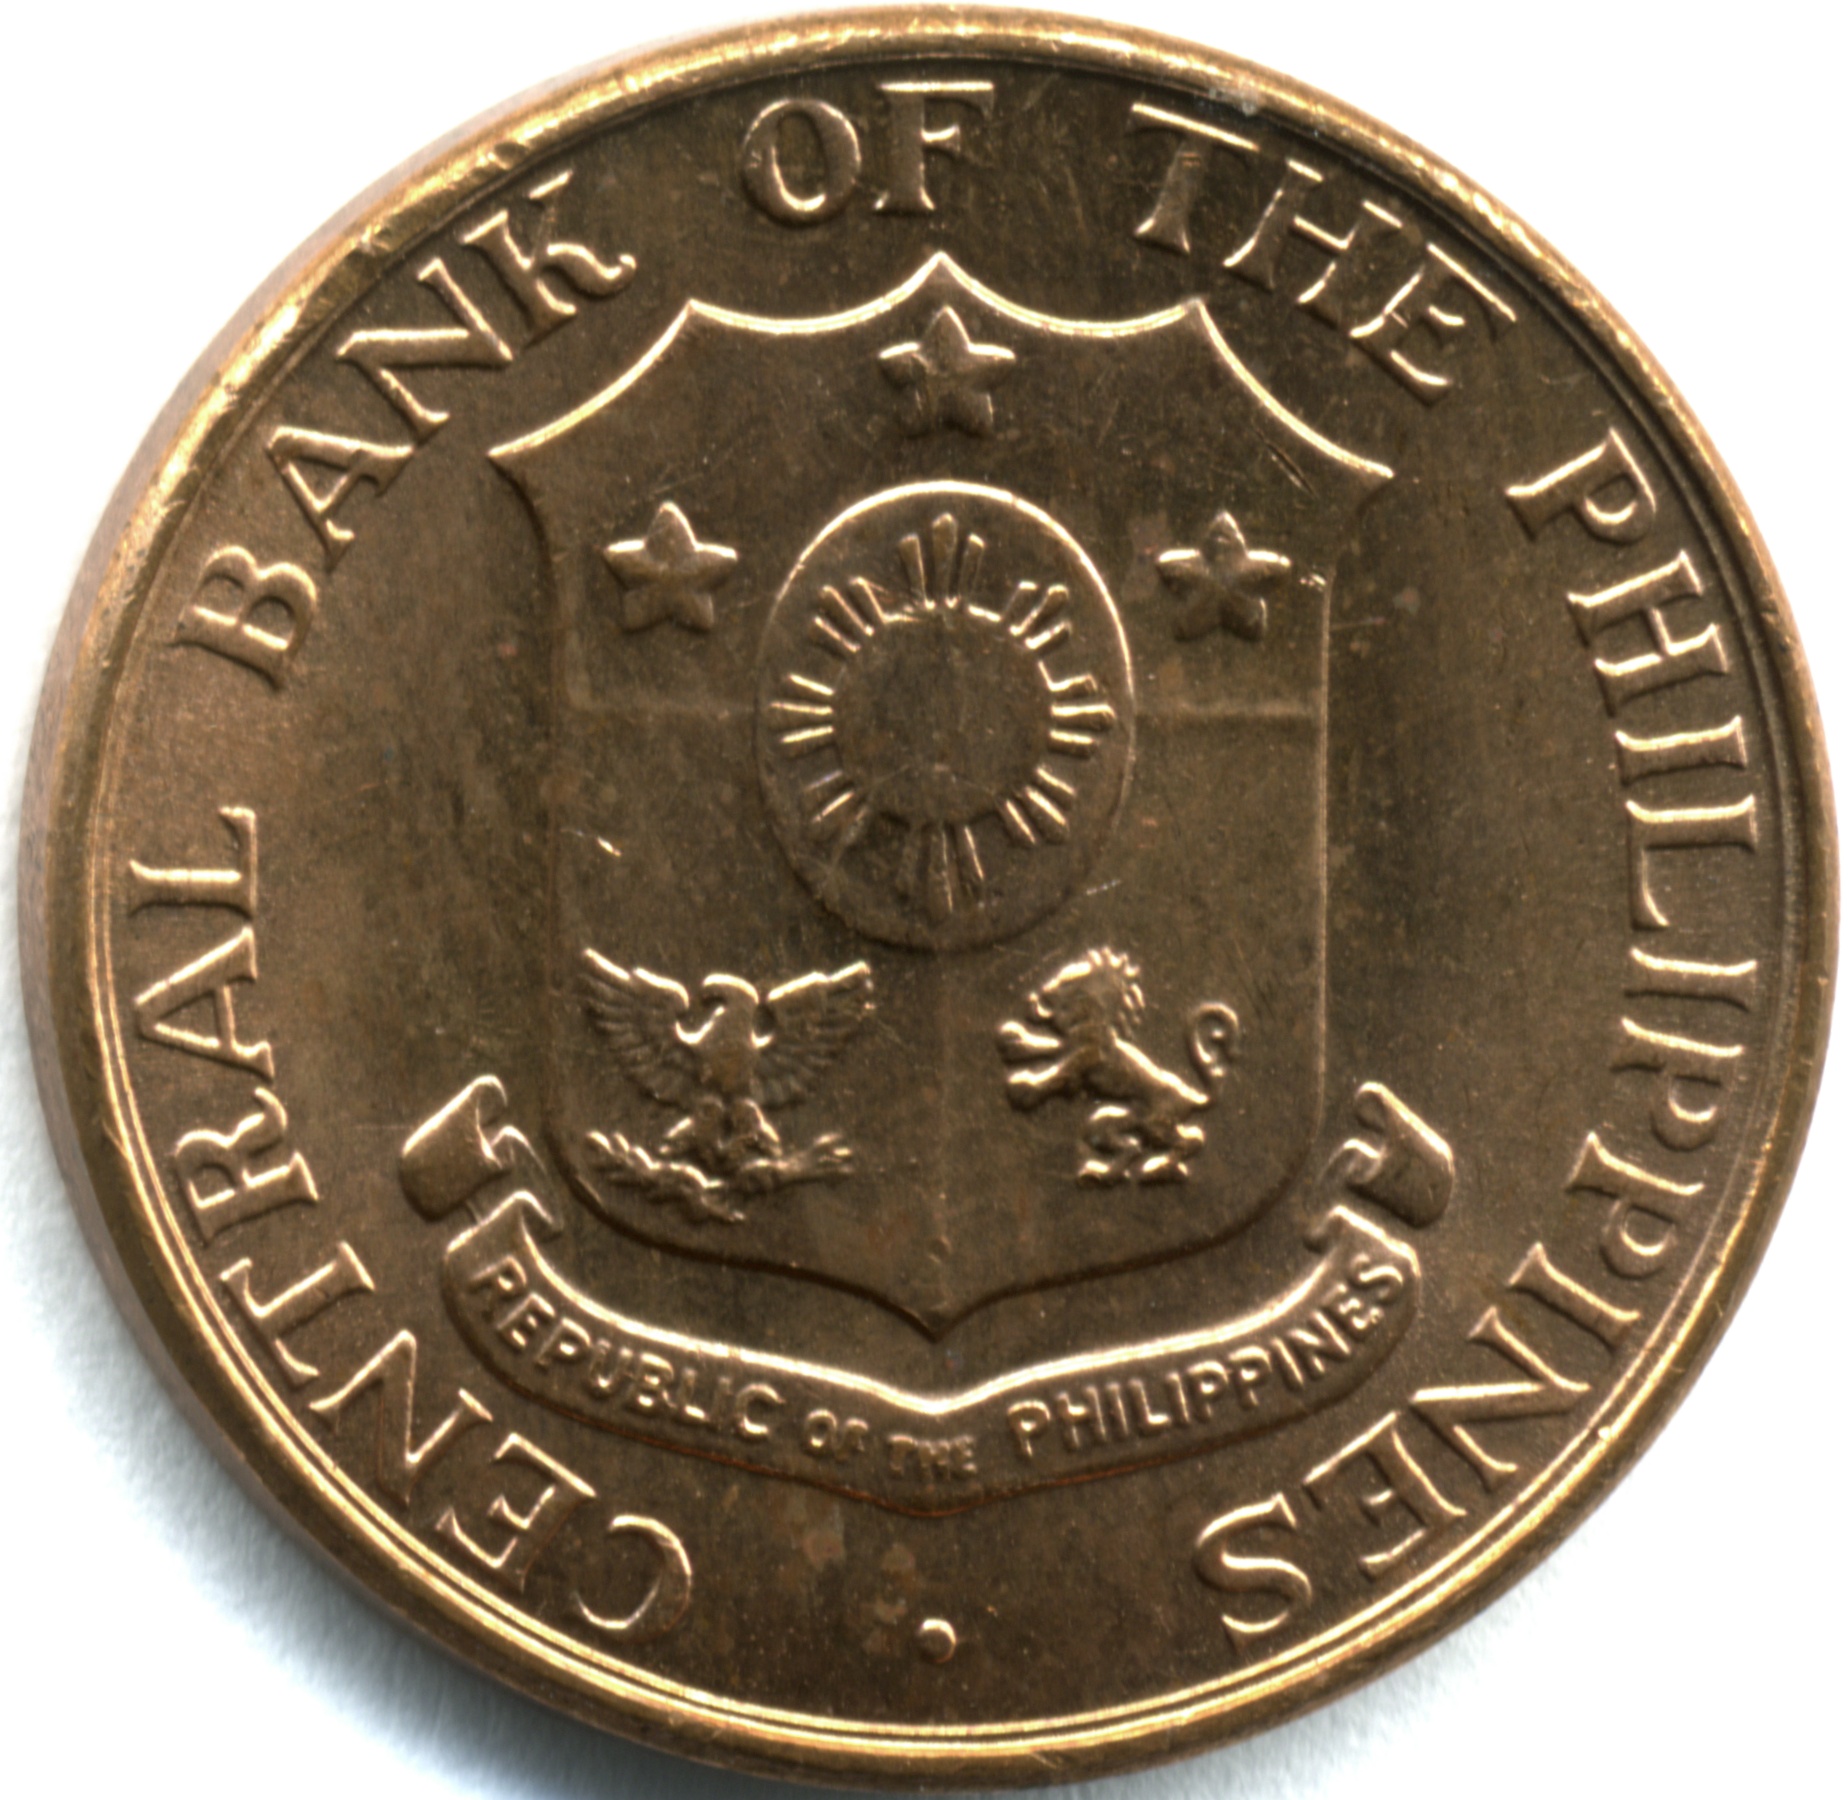 1936 年アメリカ連邦、フィリピンの 1 ペソ硬貨。 - 旧貨幣/金貨/銀貨 ...